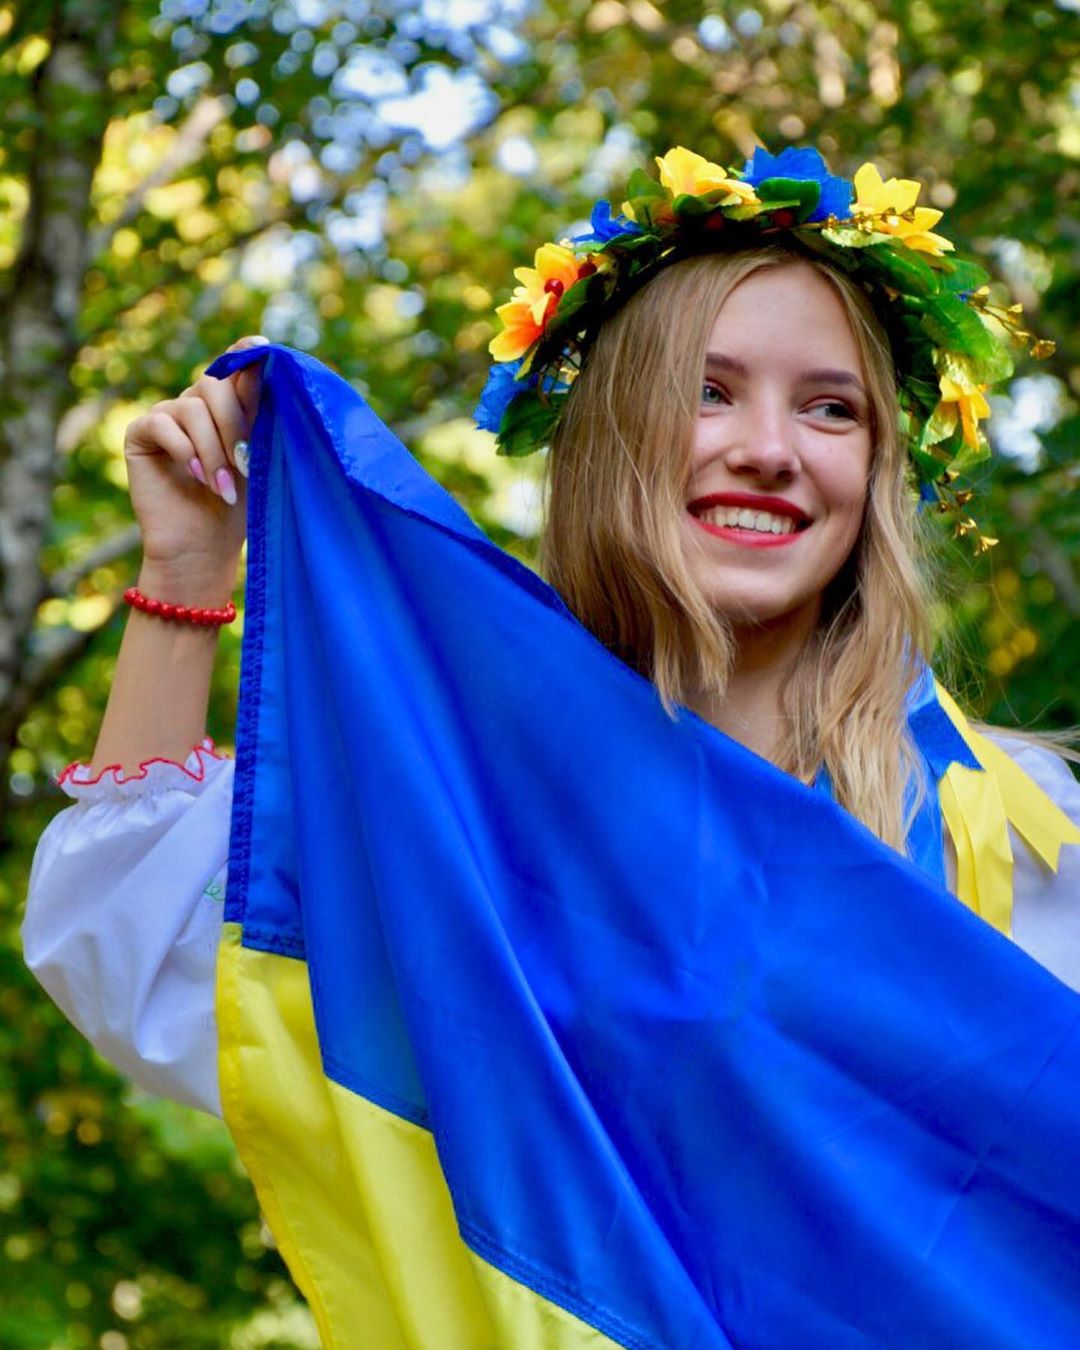 А завершаем мы эту подборку снимком @_sflsh, на котором объединилась природа, флаг и настоящая украинская красота